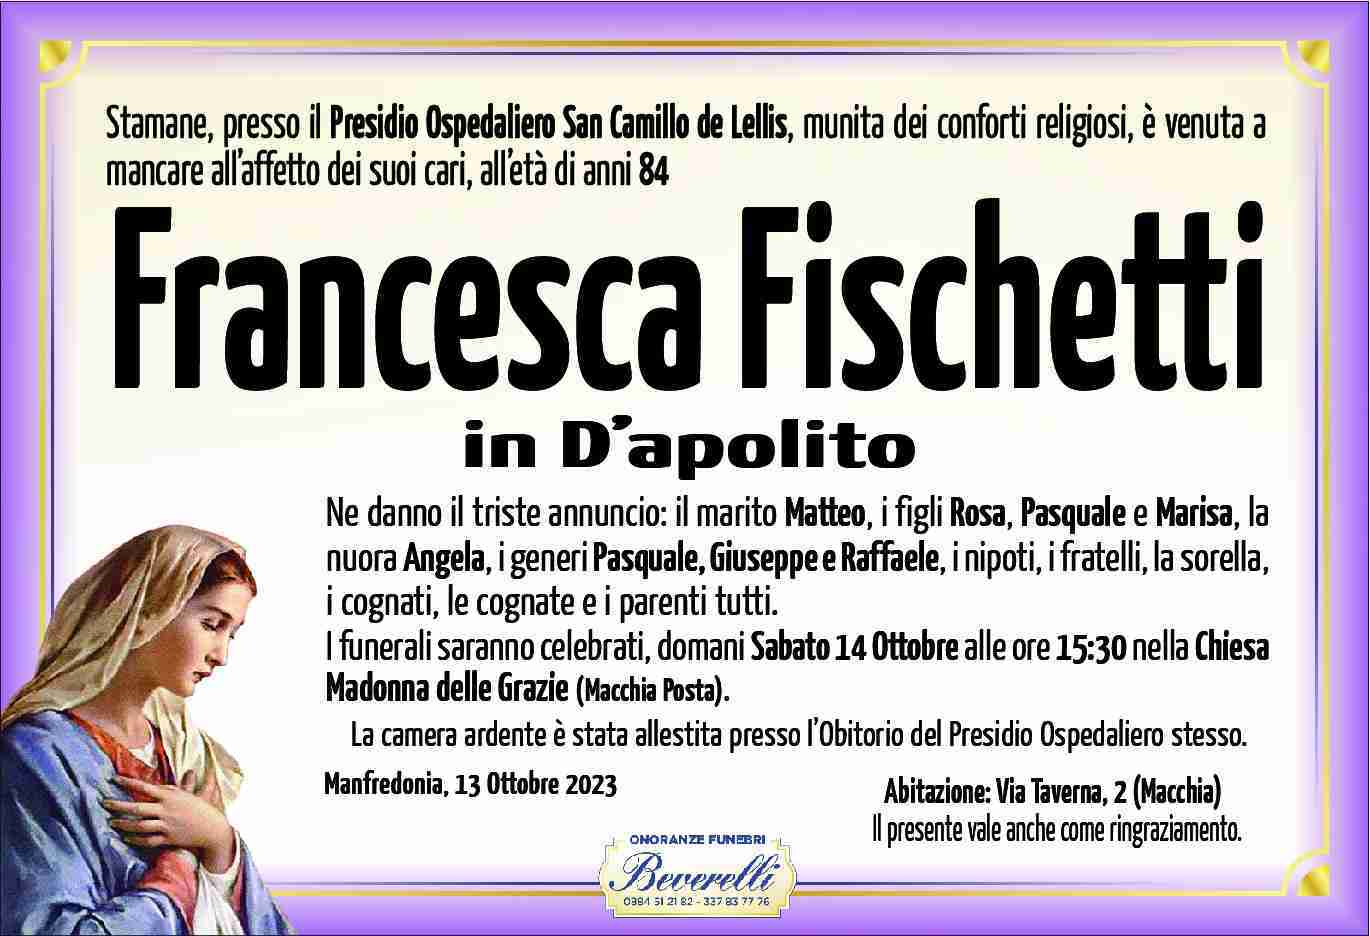 Francesca Fischetti